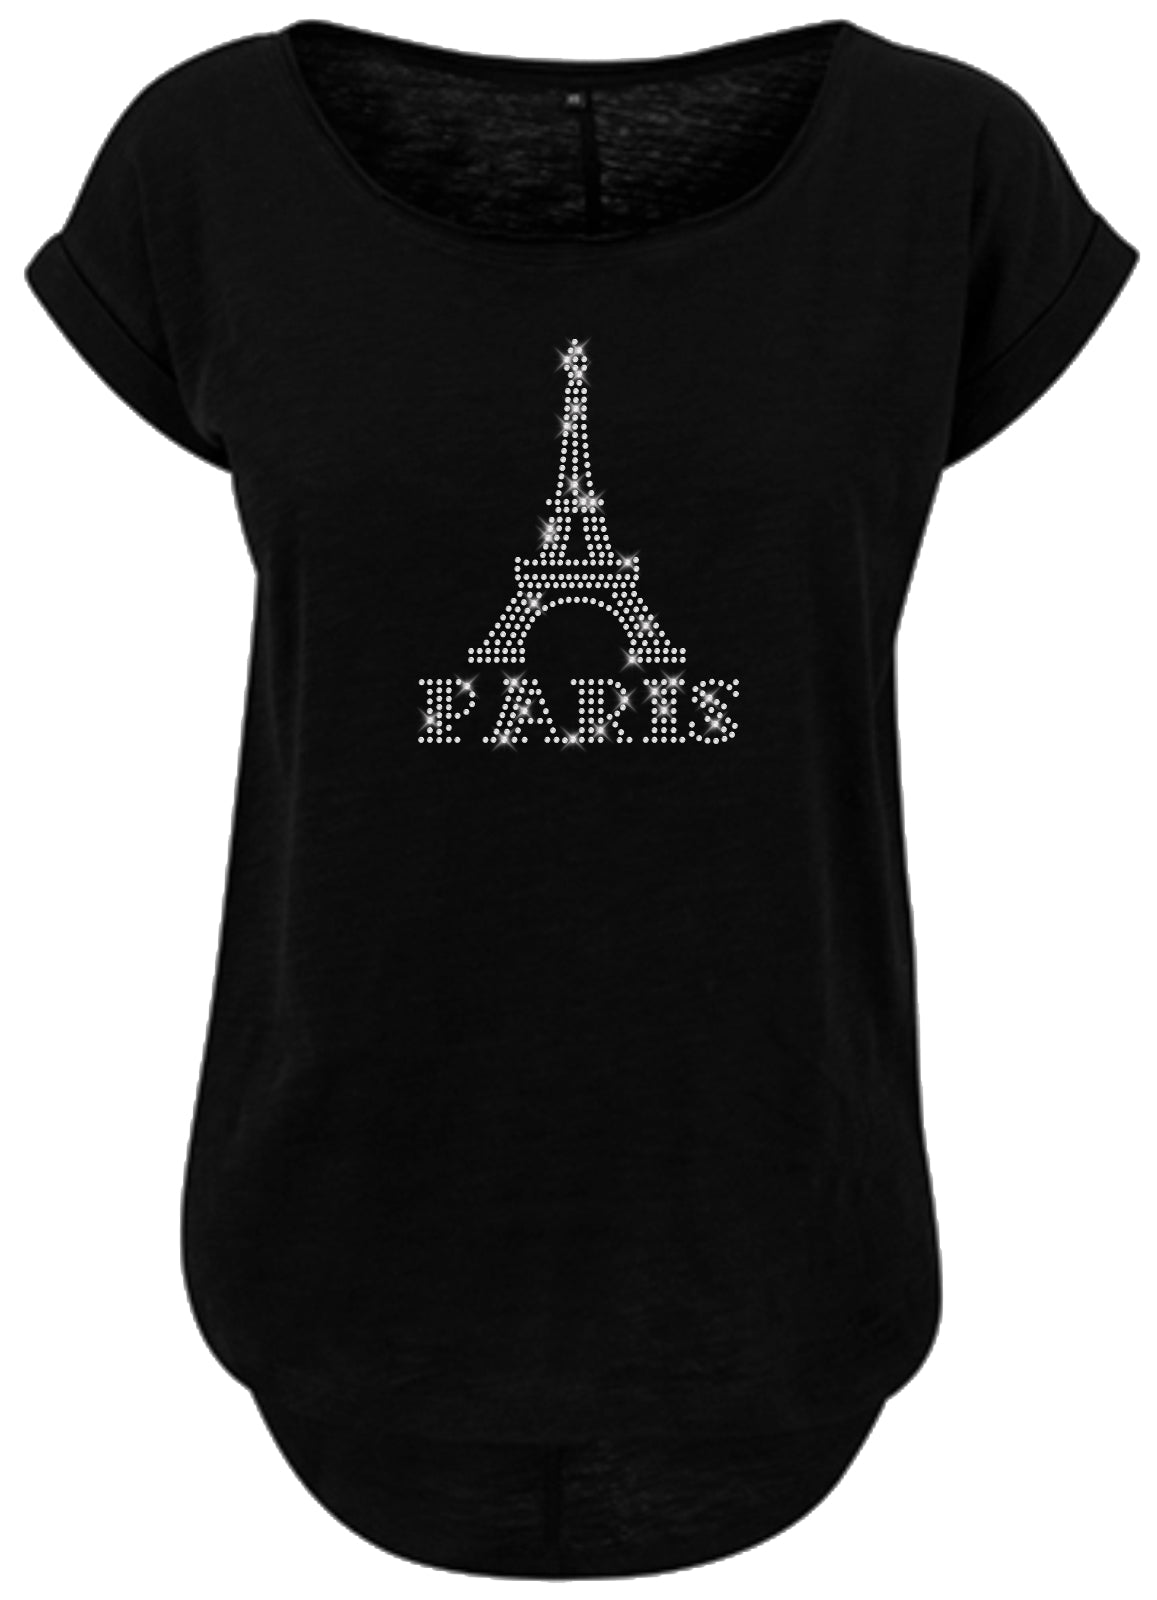 Blingeling®Shirts Damen T-Shirt   Eiffelturm in Kristall Schriftzug Paris, Frankreich